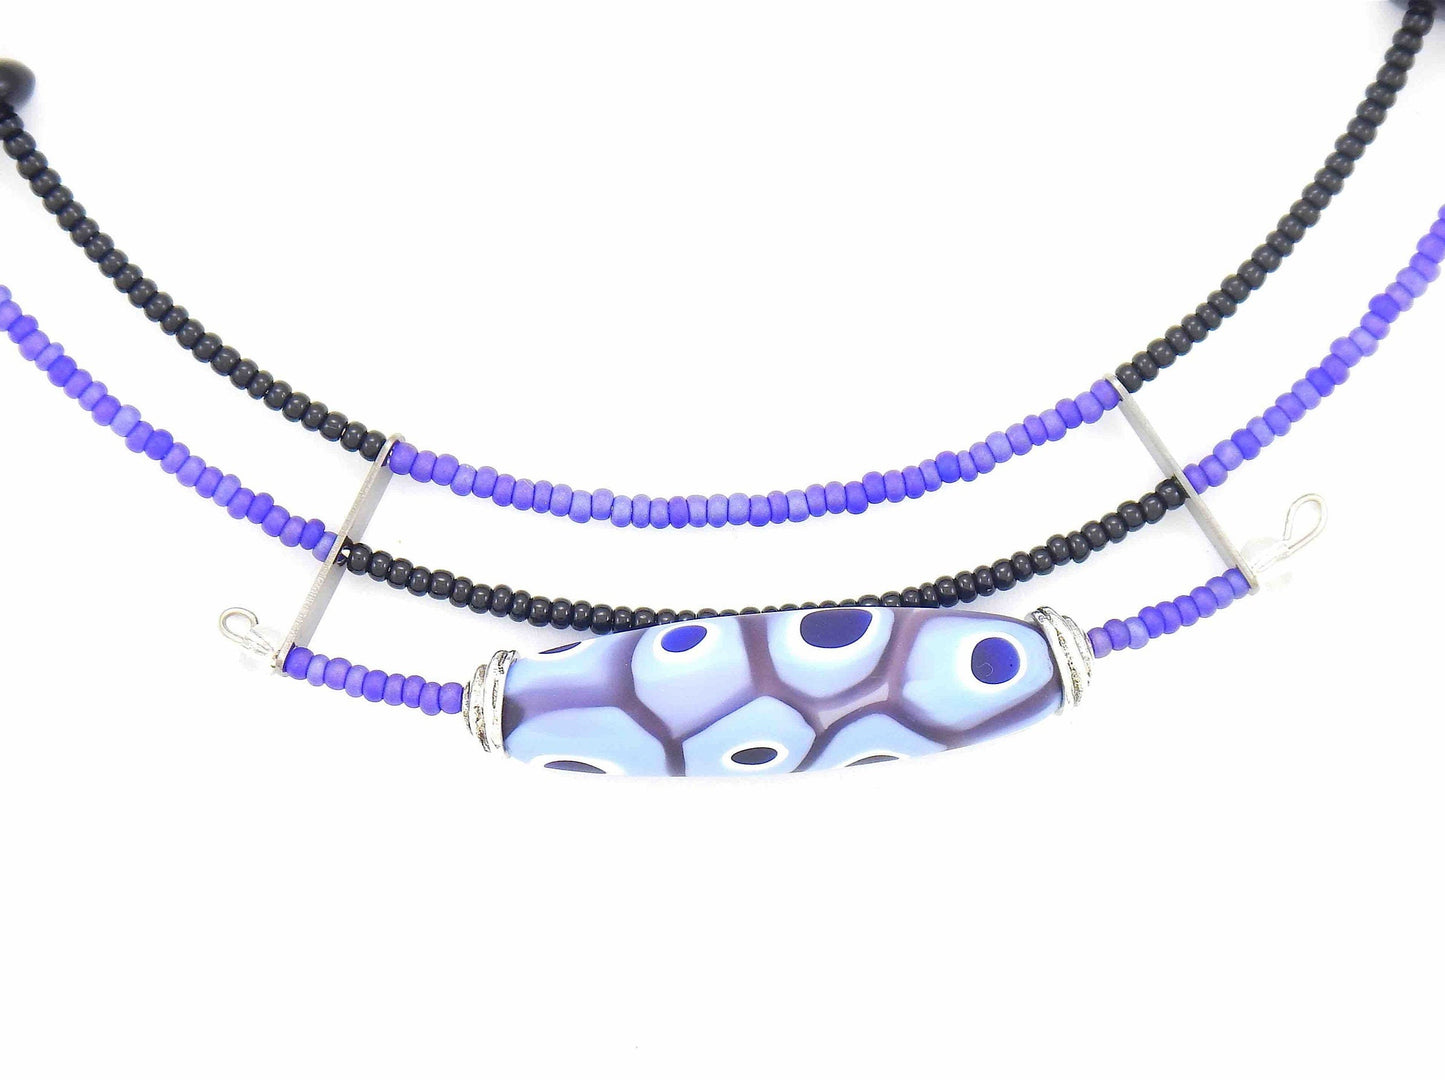 Collier court asymétrique avec bille de verre de Murano mat lilas et noir, motif d'yeux et de pois, fermoir métal sans nickel